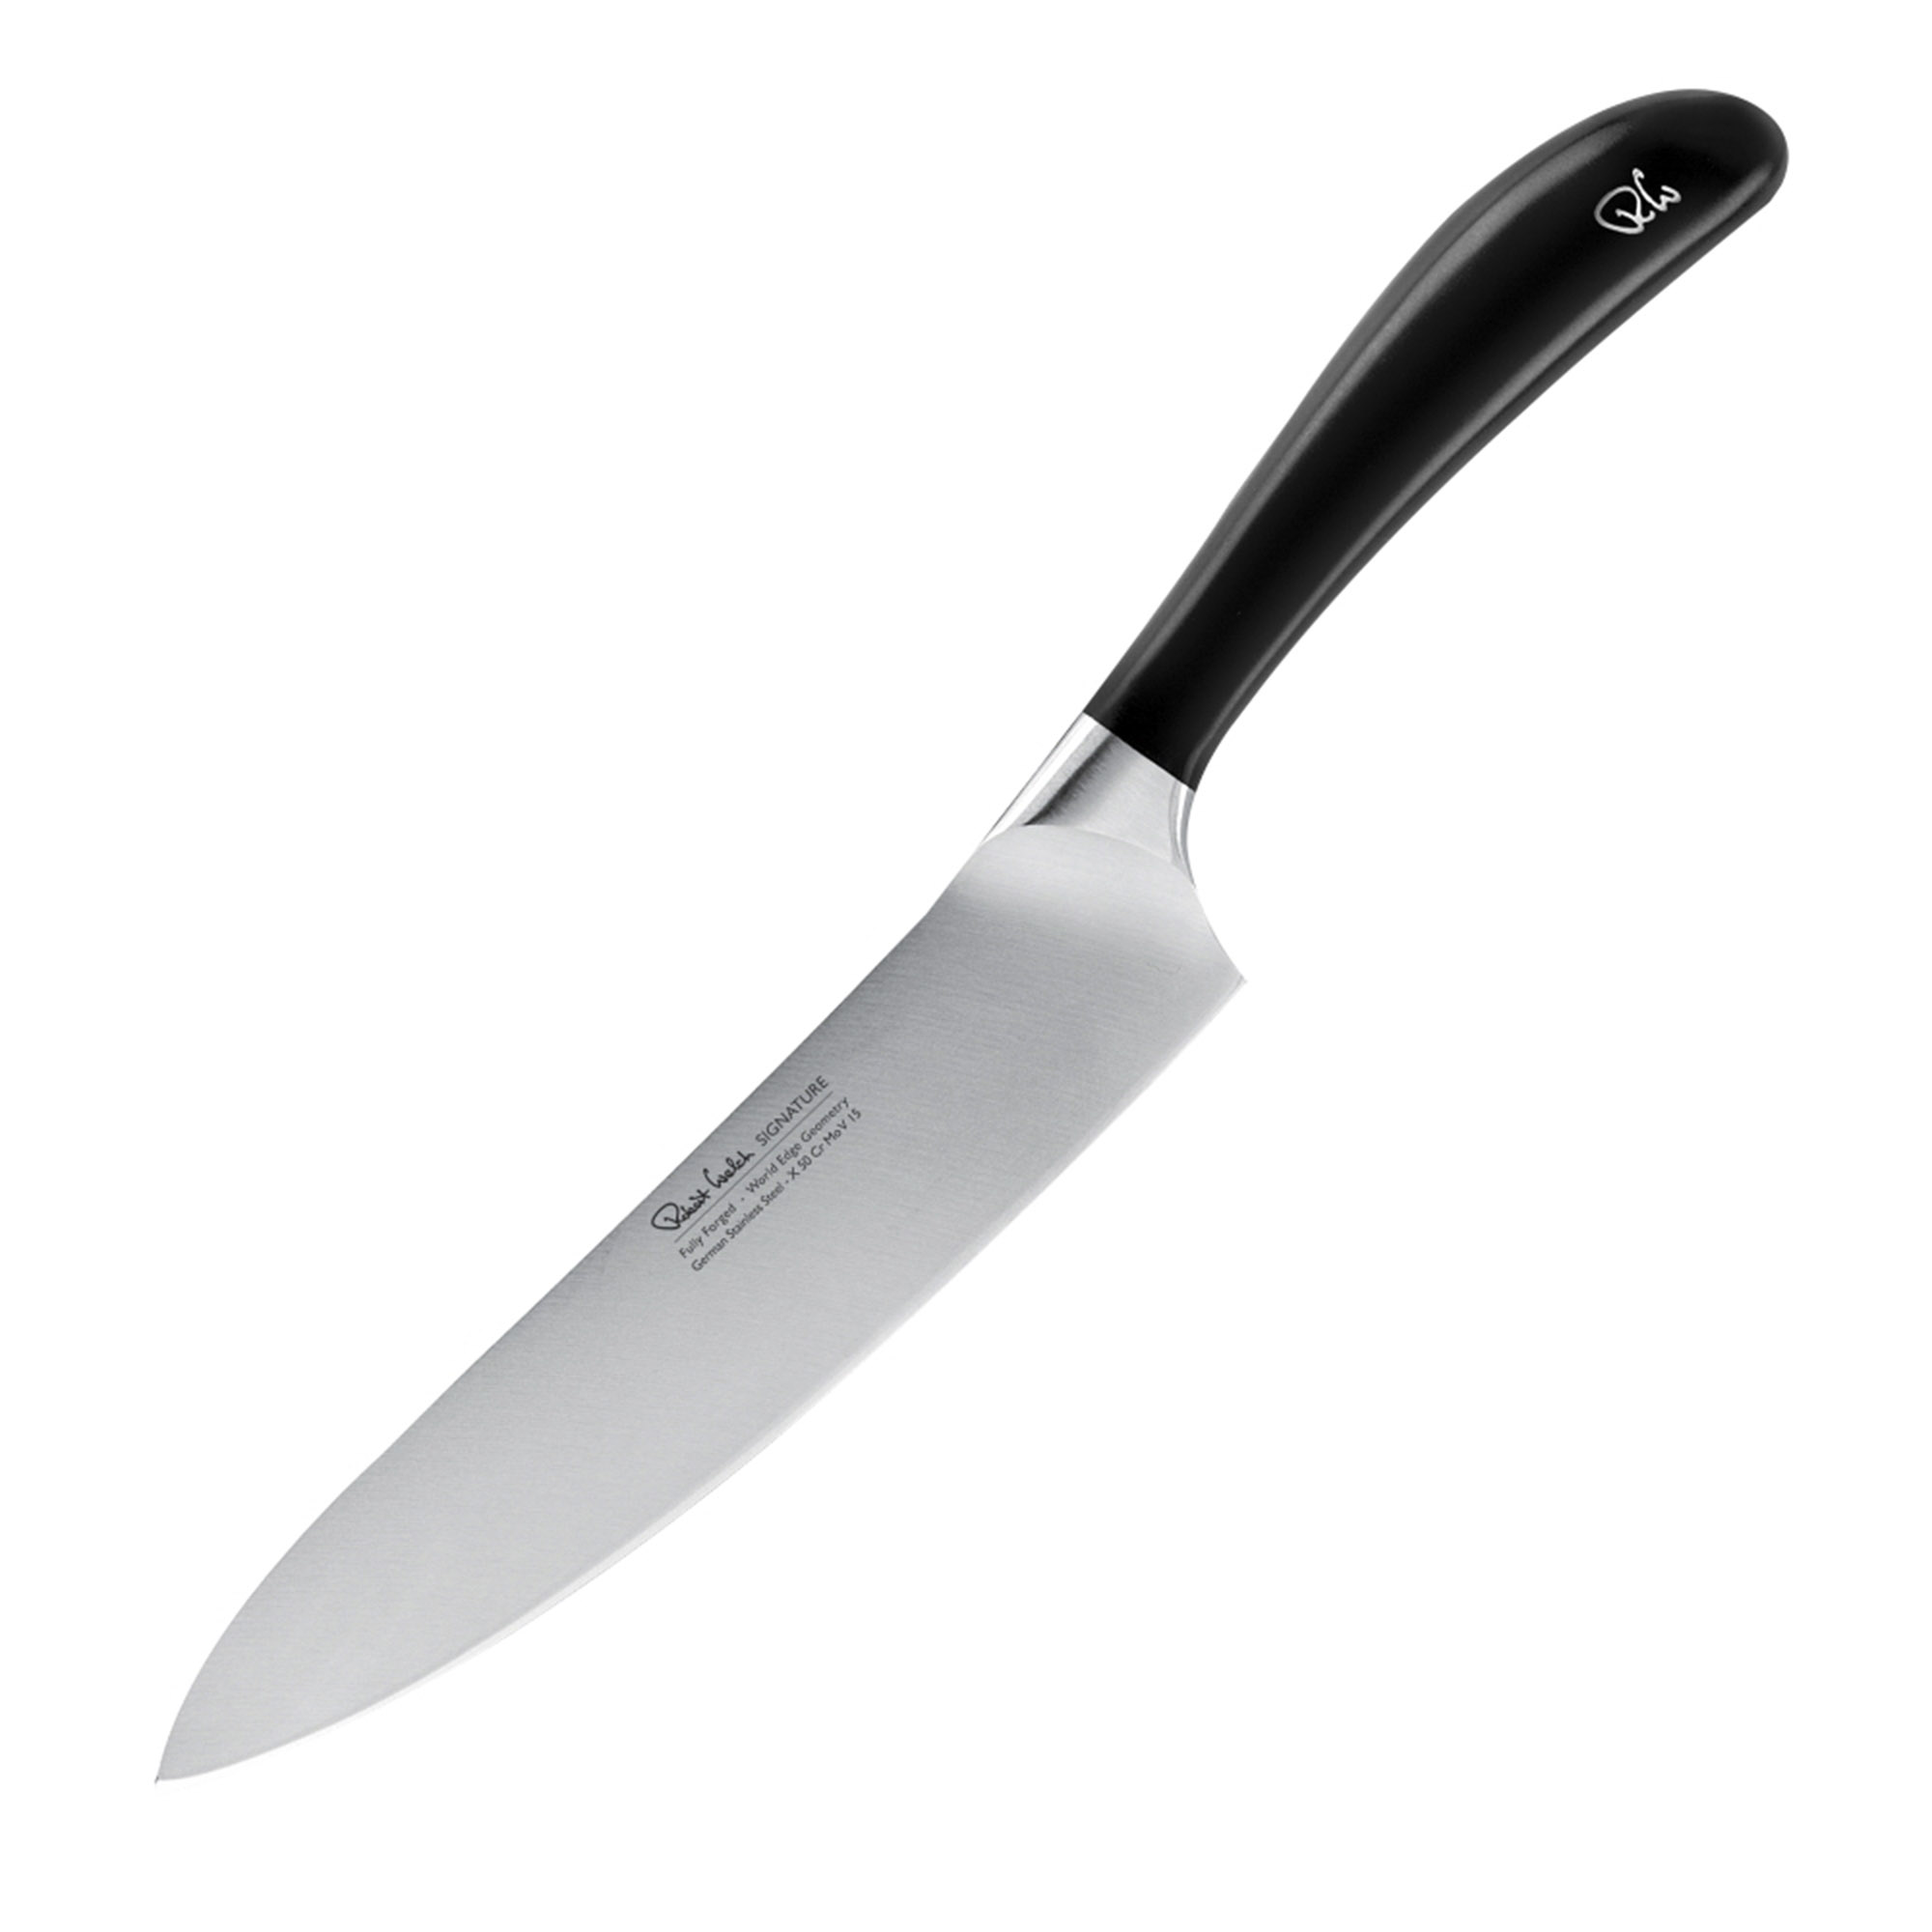 Поварской кухонный шеф-нож Robert Welch Signature 18 см